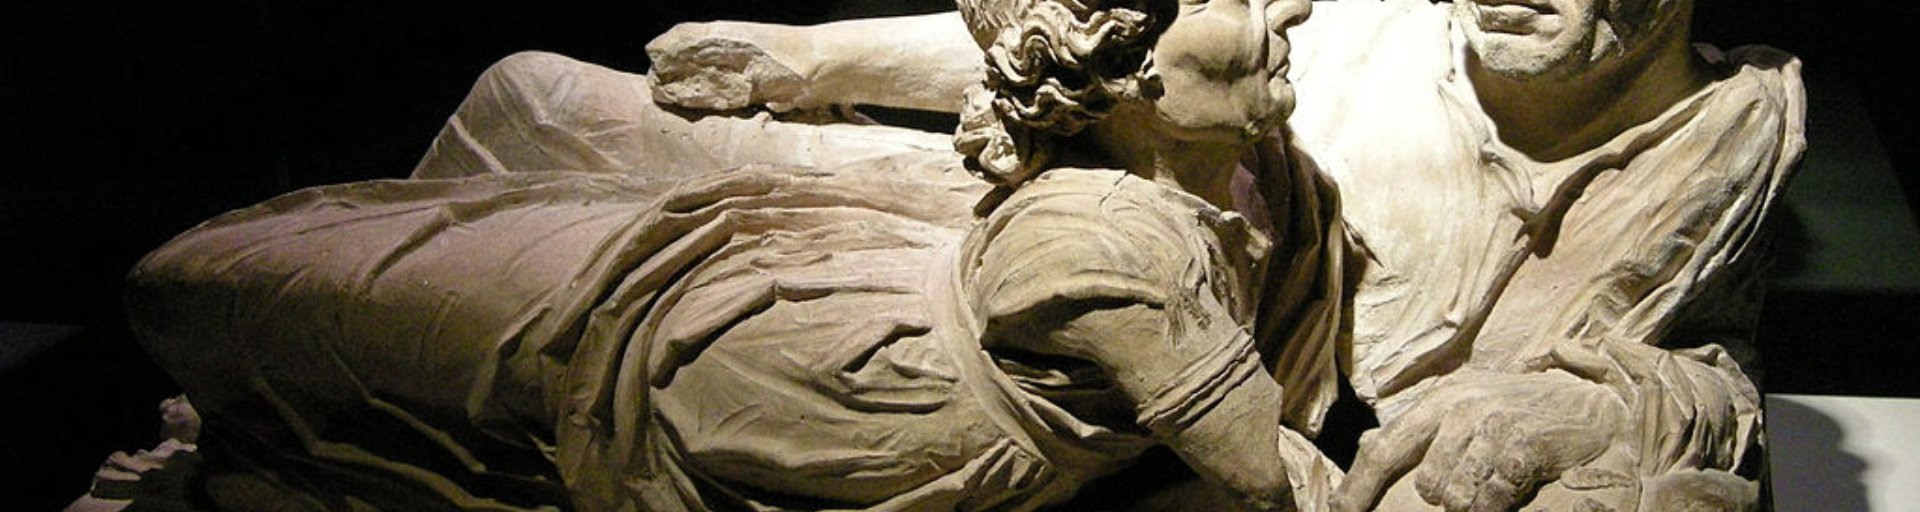 Etruscos, urna de los esposos, Volterra